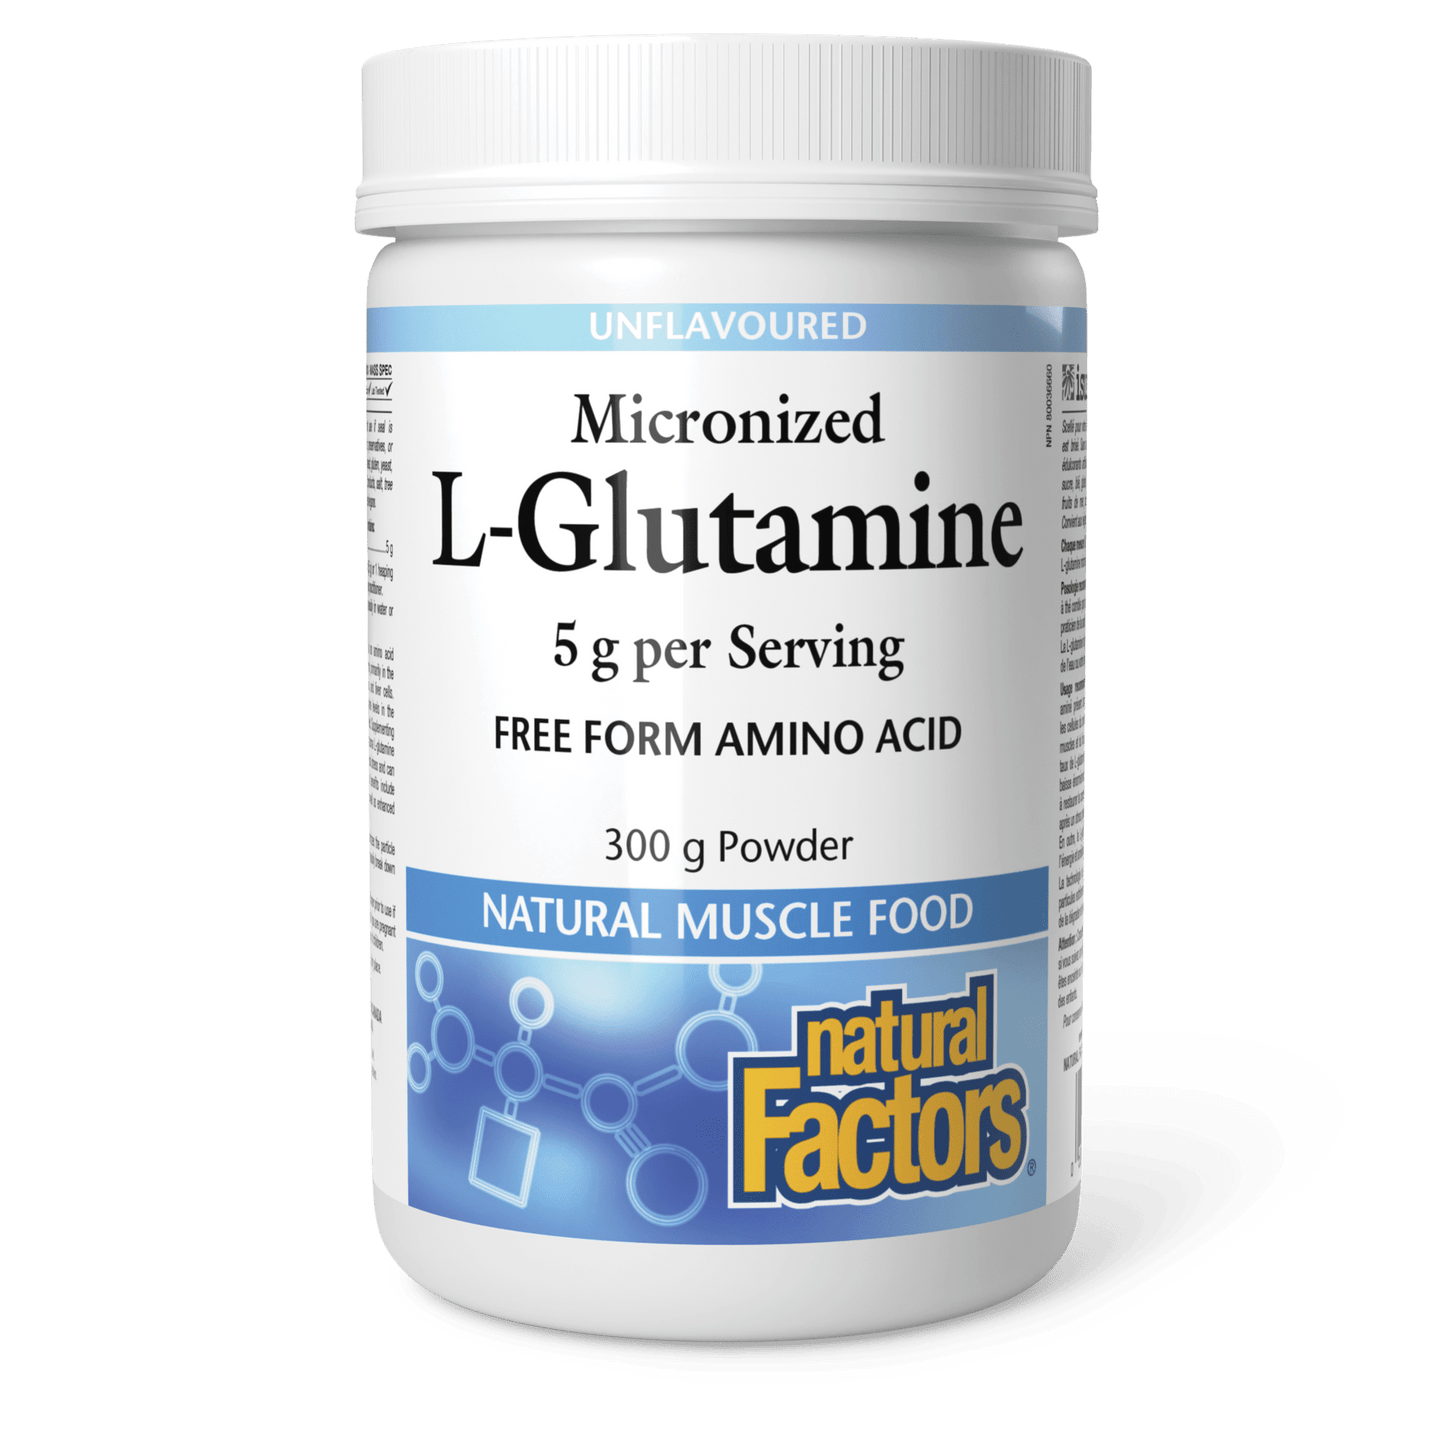 Micronized L-Glutamine 5 g, Natural Factors|v|image|2804